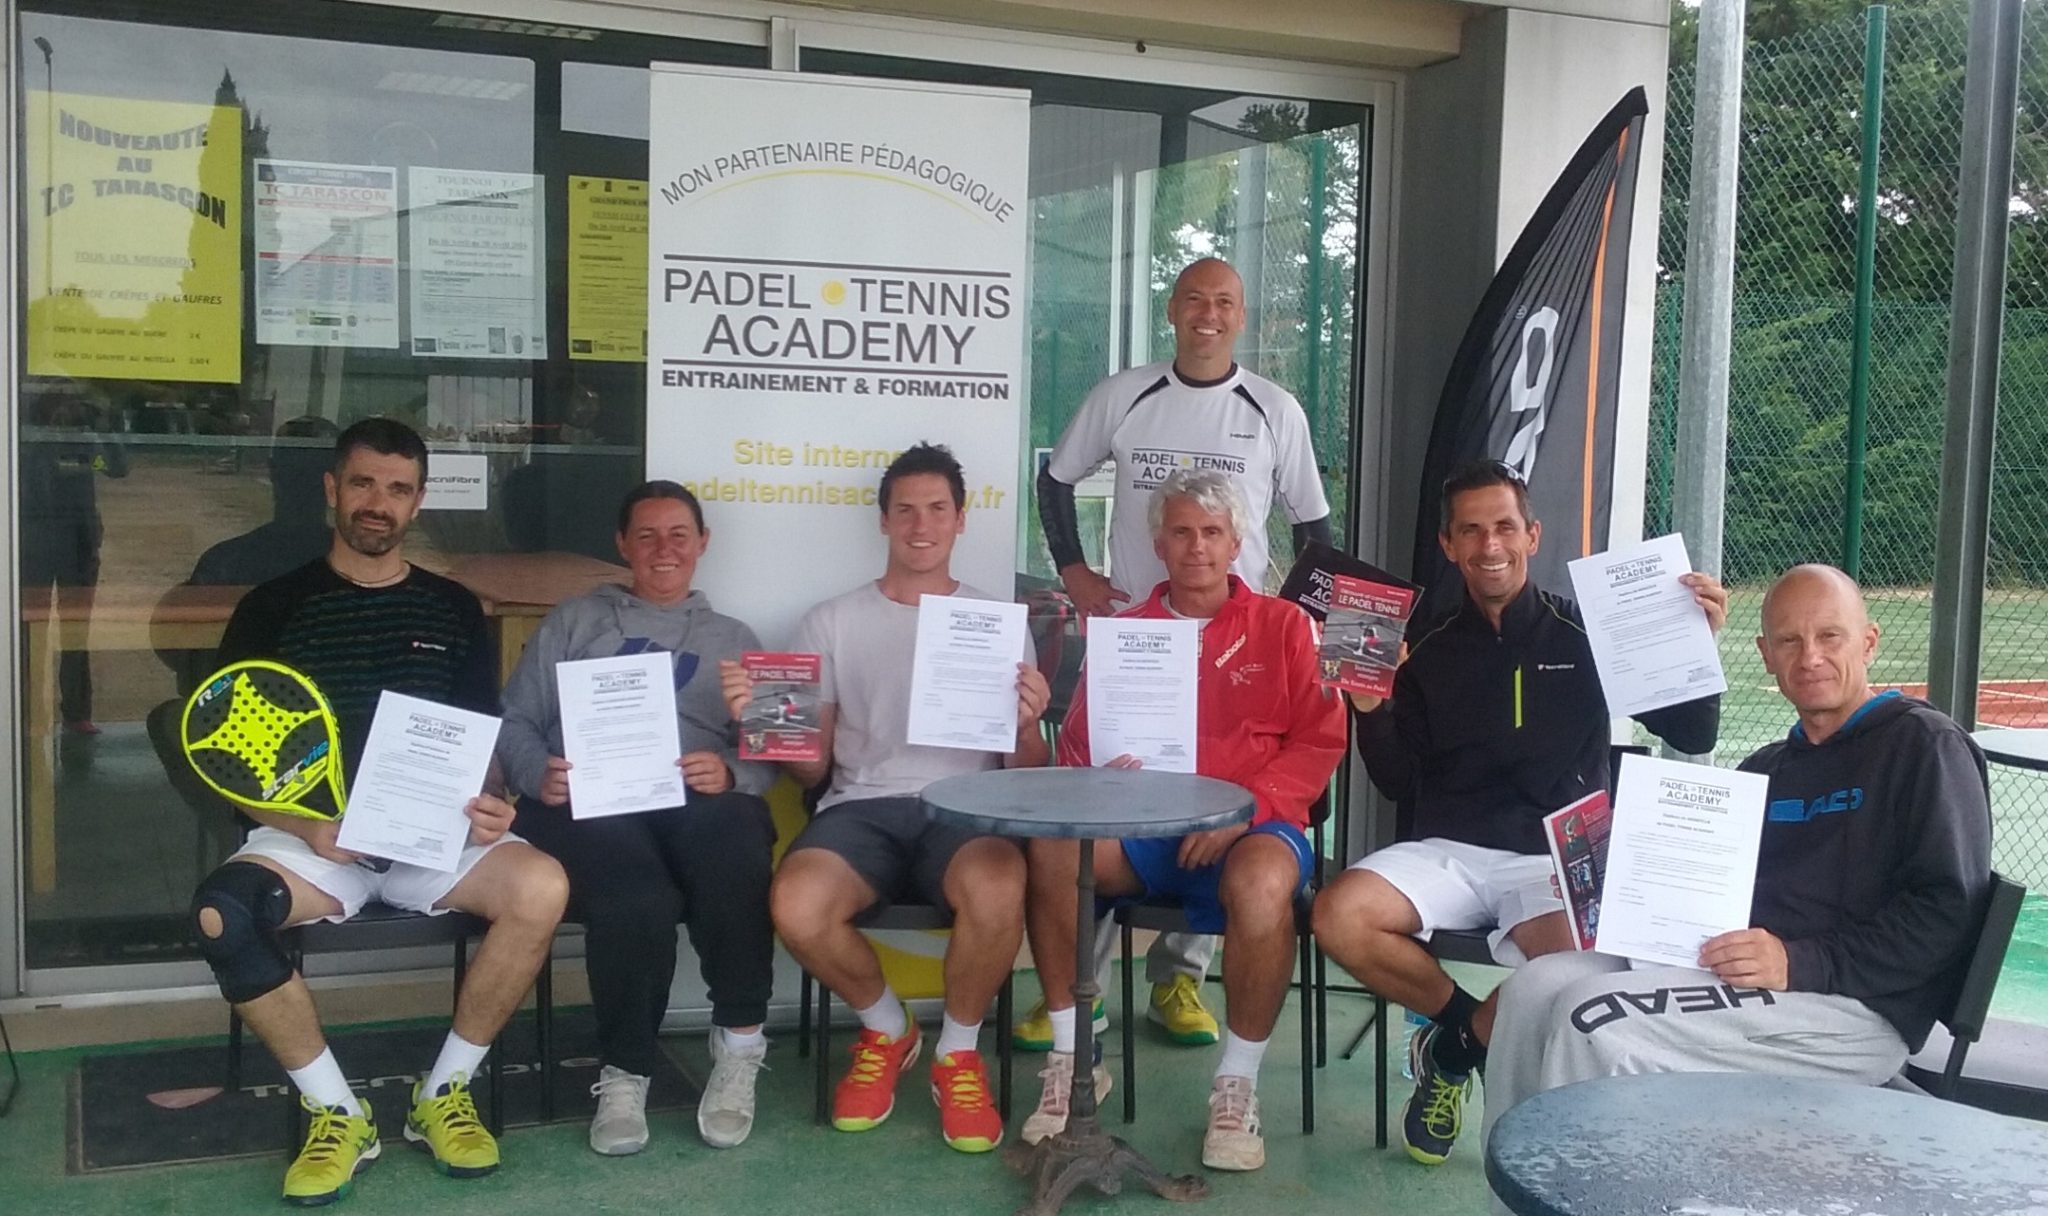 inhuldiging van de Tarascon Tennis Club met Padel Tennis Academy